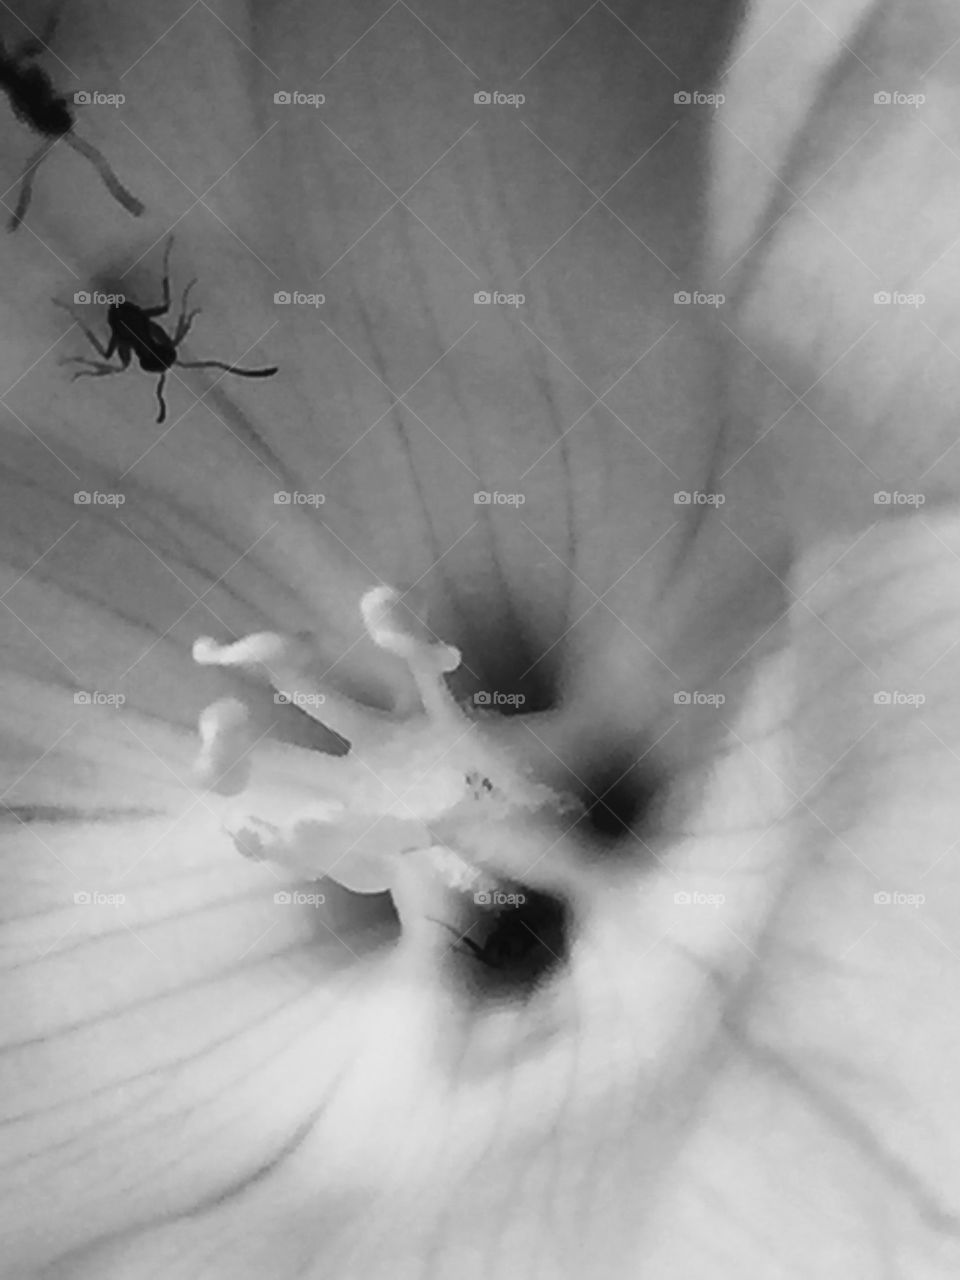 Ants in a flower